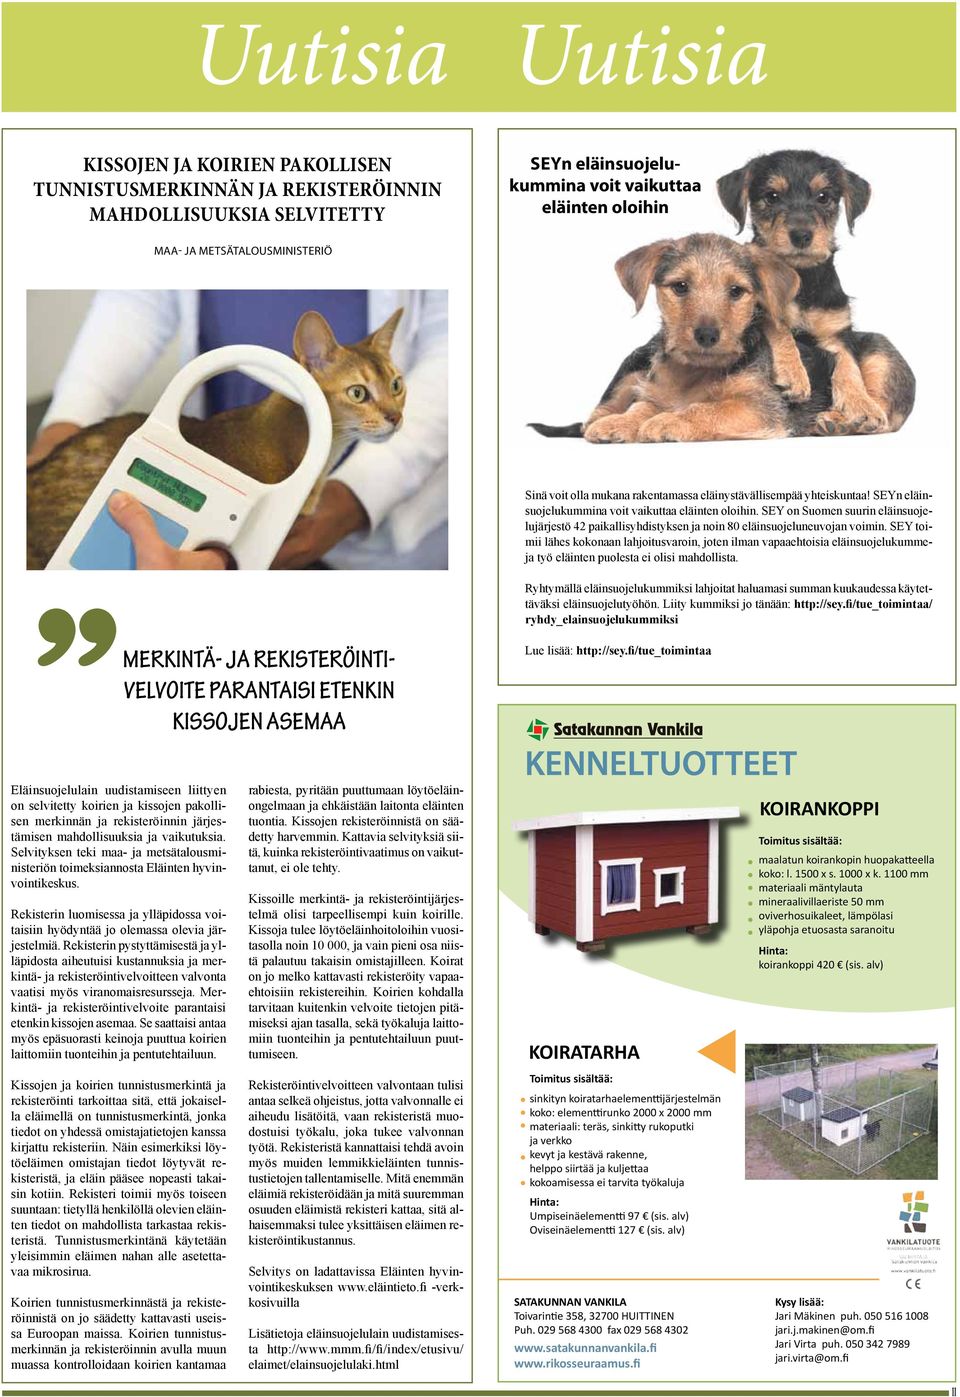 SEY on Suomen suurin eläinsuojelujärjestö 42 paikallisyhdistyksen ja noin 80 eläinsuojeluneuvojan voimin.